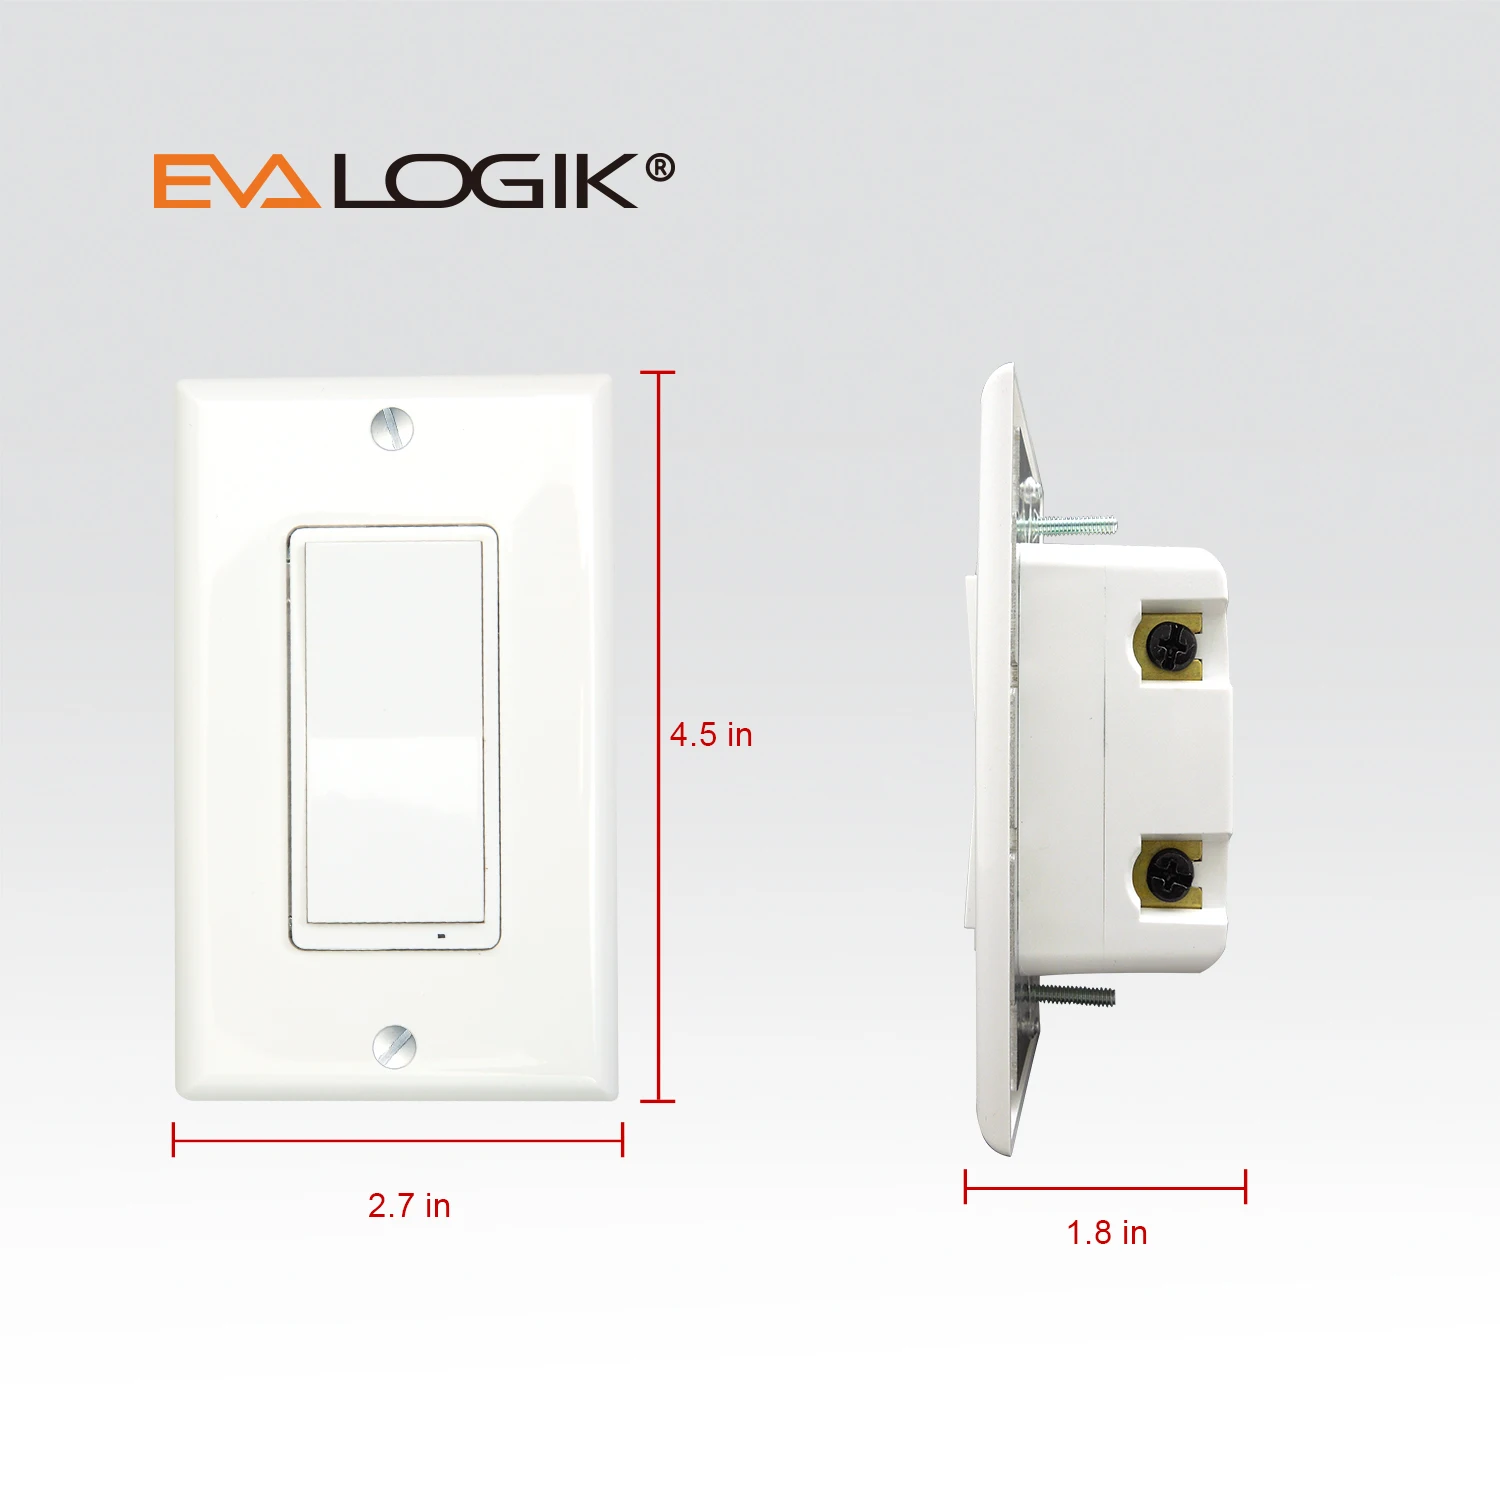 EVA LOGIK US Standard 908.42Mhz Smart Wireless Remote Z-Wave Wall Light Switch